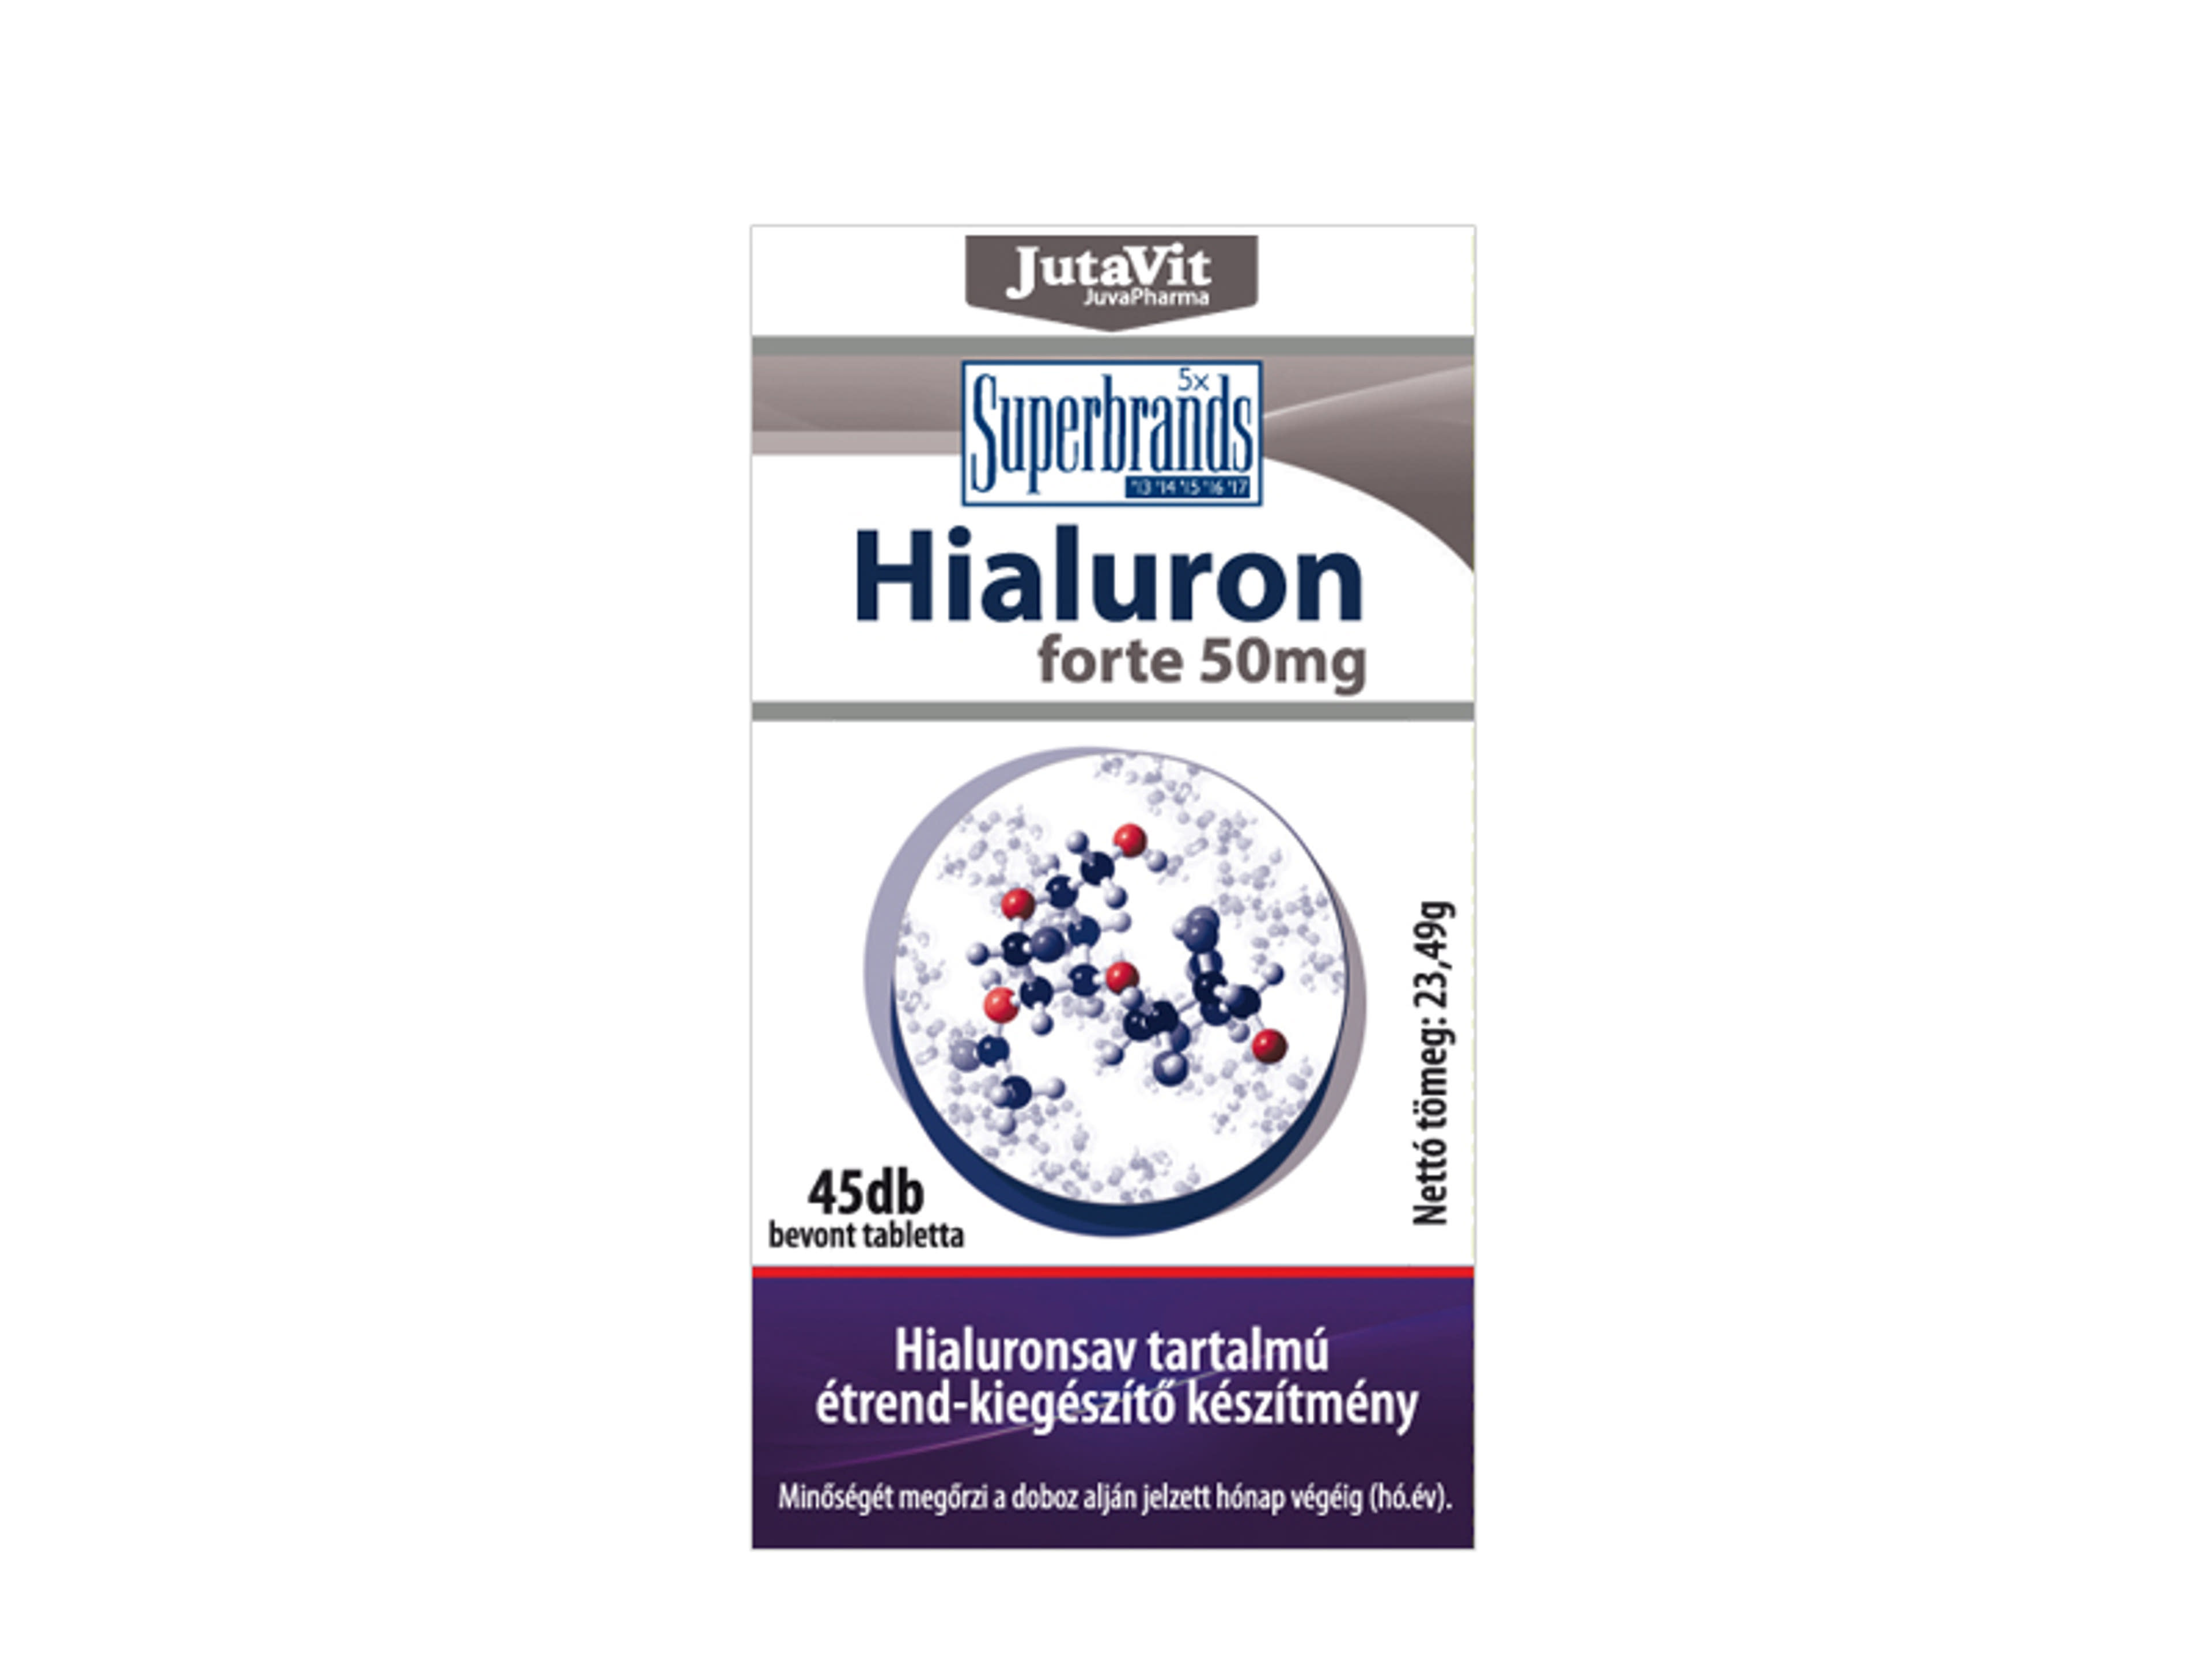 JutaVit Hialuron Forte 50mg Tabletta - 45 db